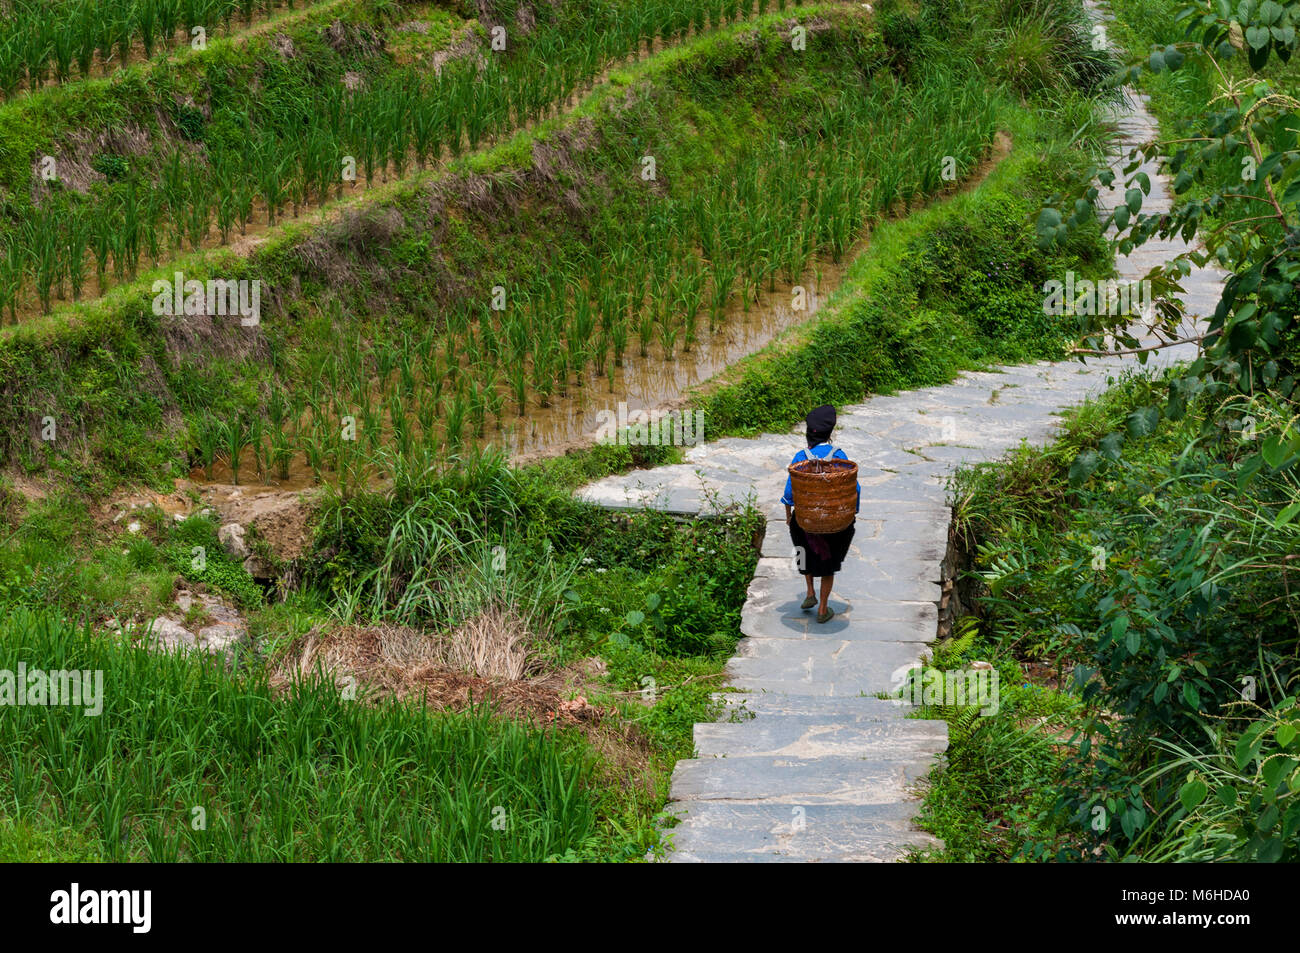 Dazhai, China - August 4, 2012: eine locar Landwirt mit einem Korb auf dem Rücken entlang einer Reis terrassierte Feld in der Nähe von dem Dorf Dazhai in China, Asien Stockfoto